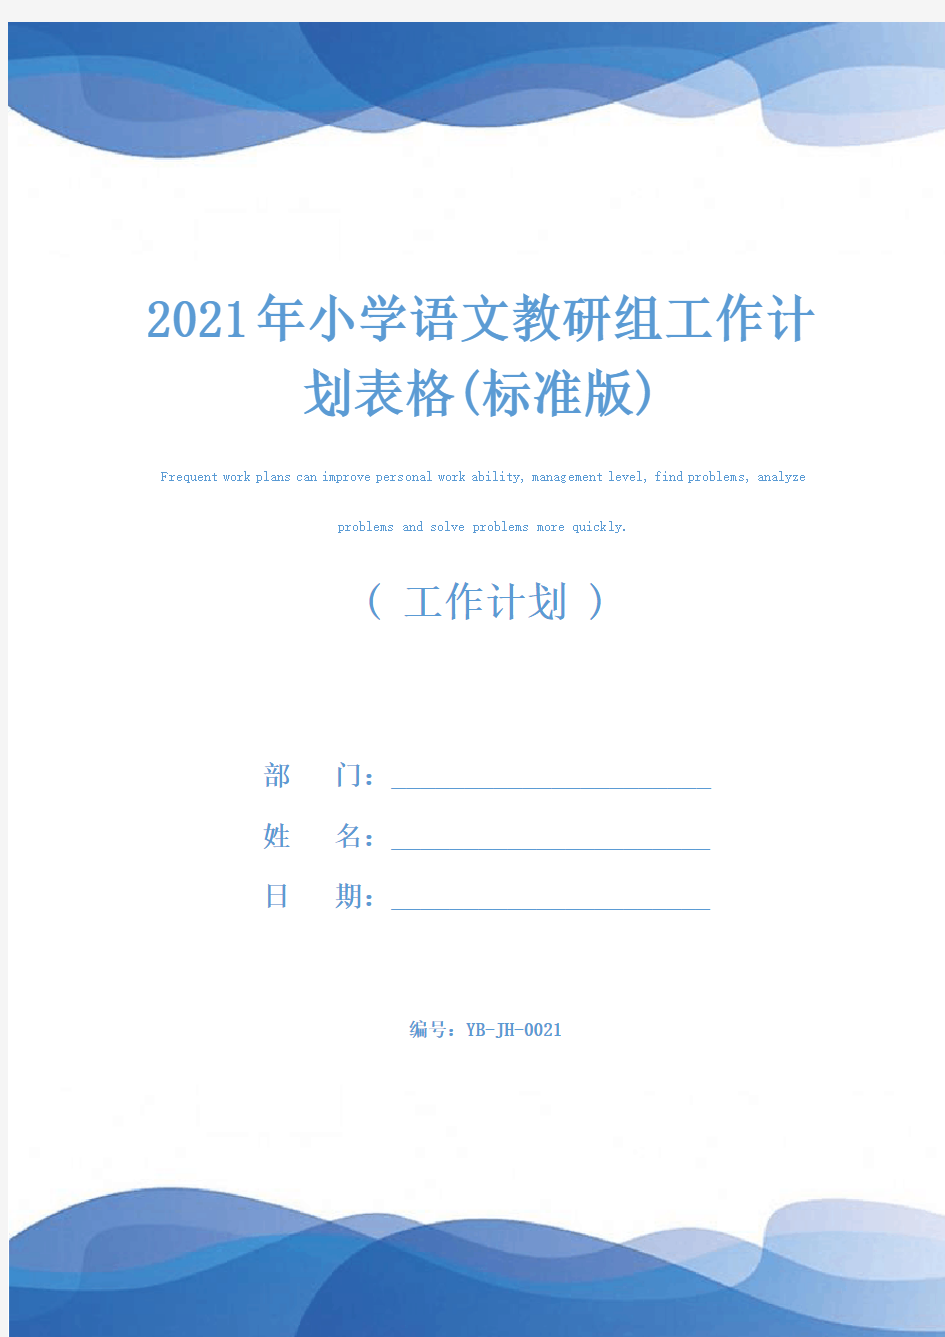 2021年小学语文教研组工作计划表格(标准版)